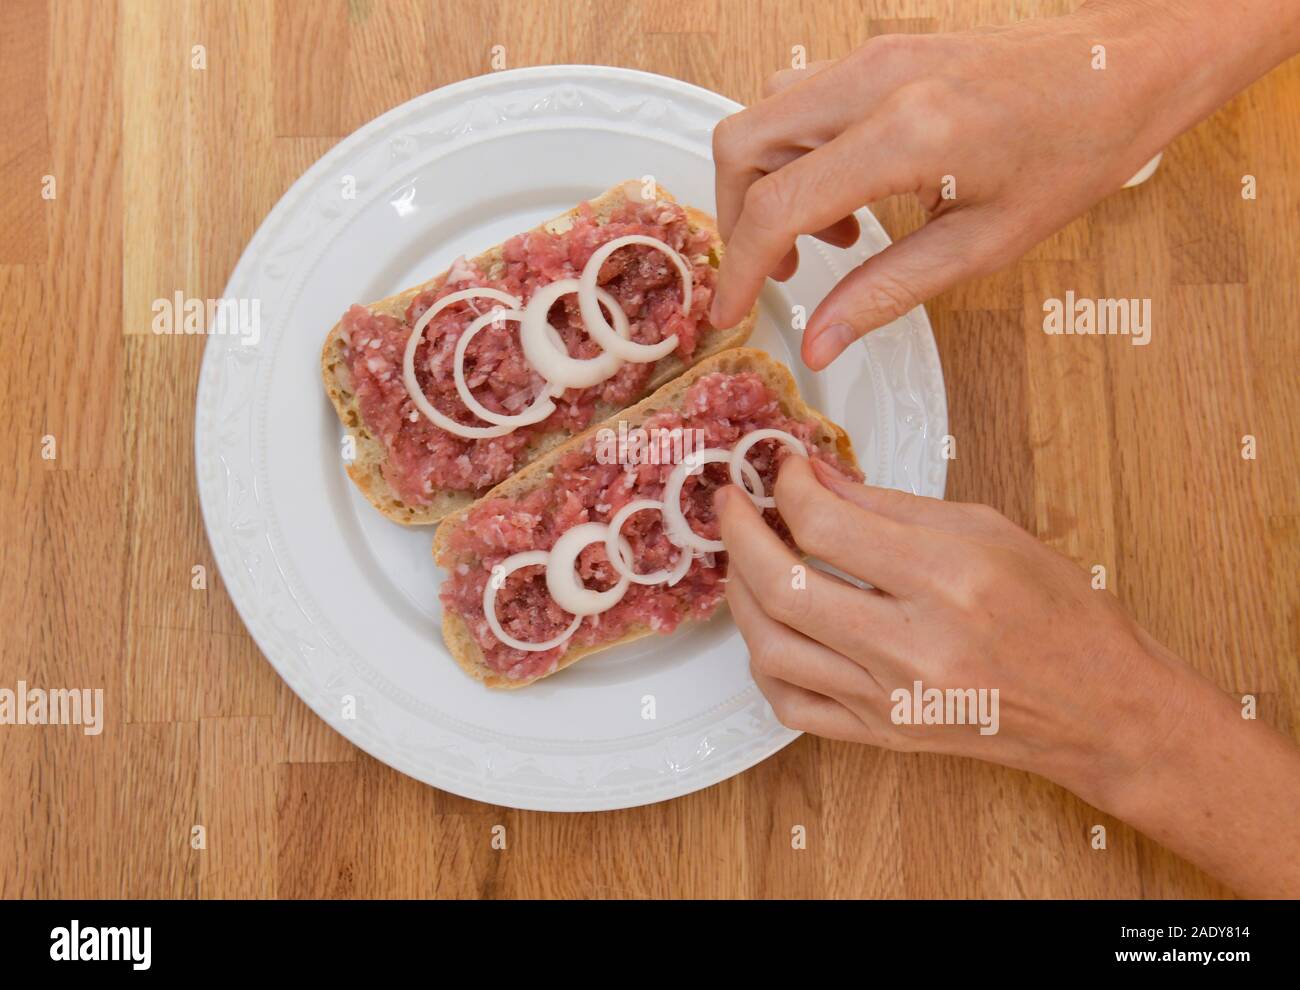 Teller mit Mettbrötchen, Fleischkonsum Stock Photo